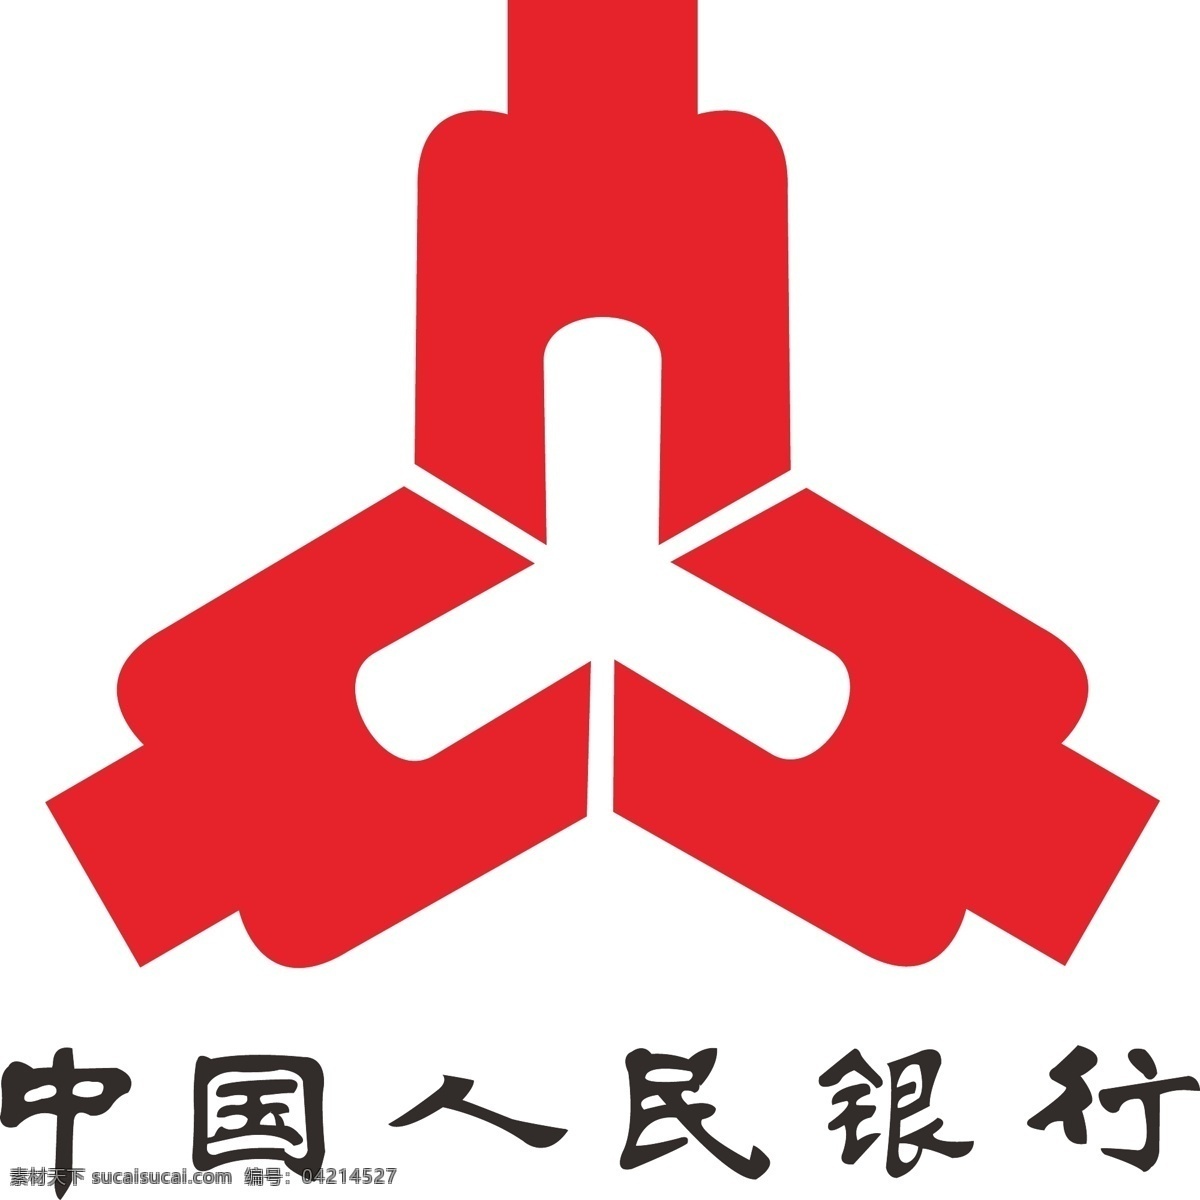 中国人民银行 logo 银行logo 标志 银行标志